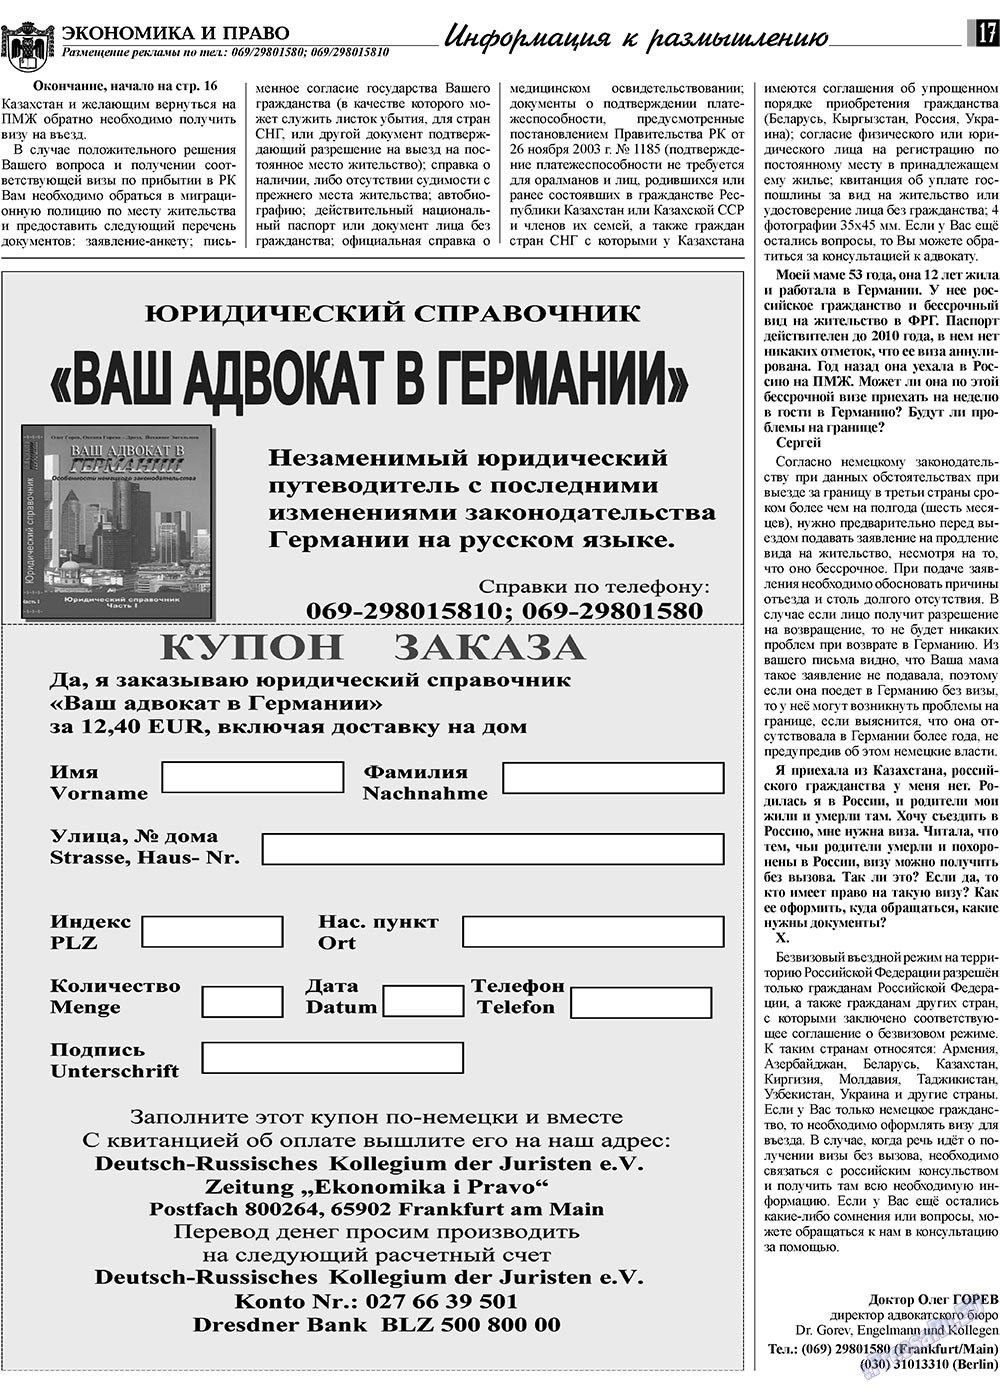 Экономика и право, газета. 2009 №6 стр.17